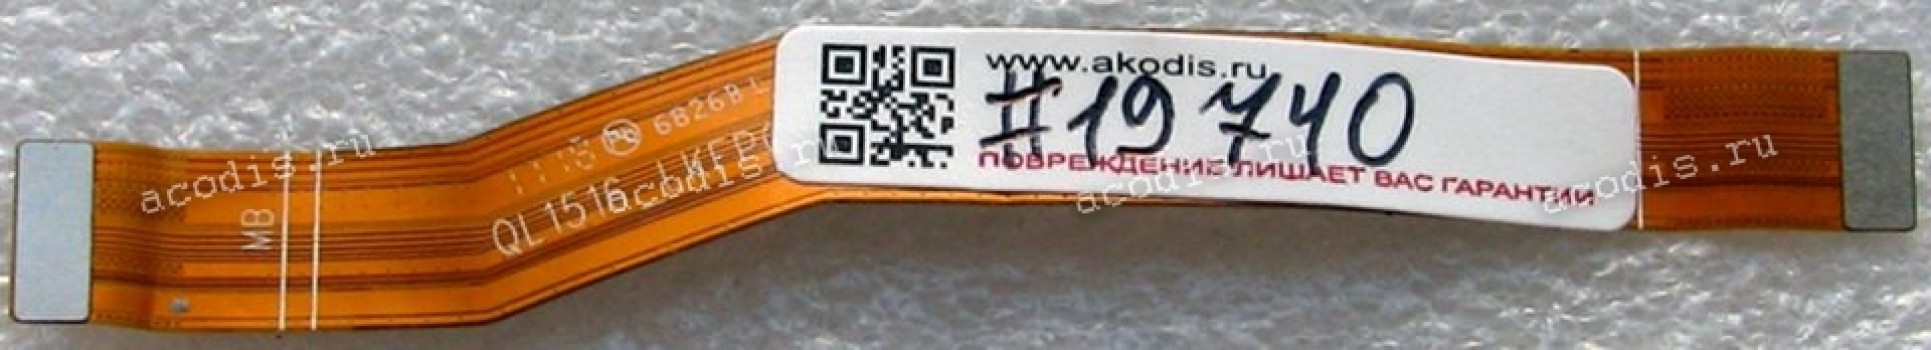 FPC Sub board cable Asus ZenFone 4 Max ZC554KL (X00ID) (p/n AL890_LKFPC_V1.3)